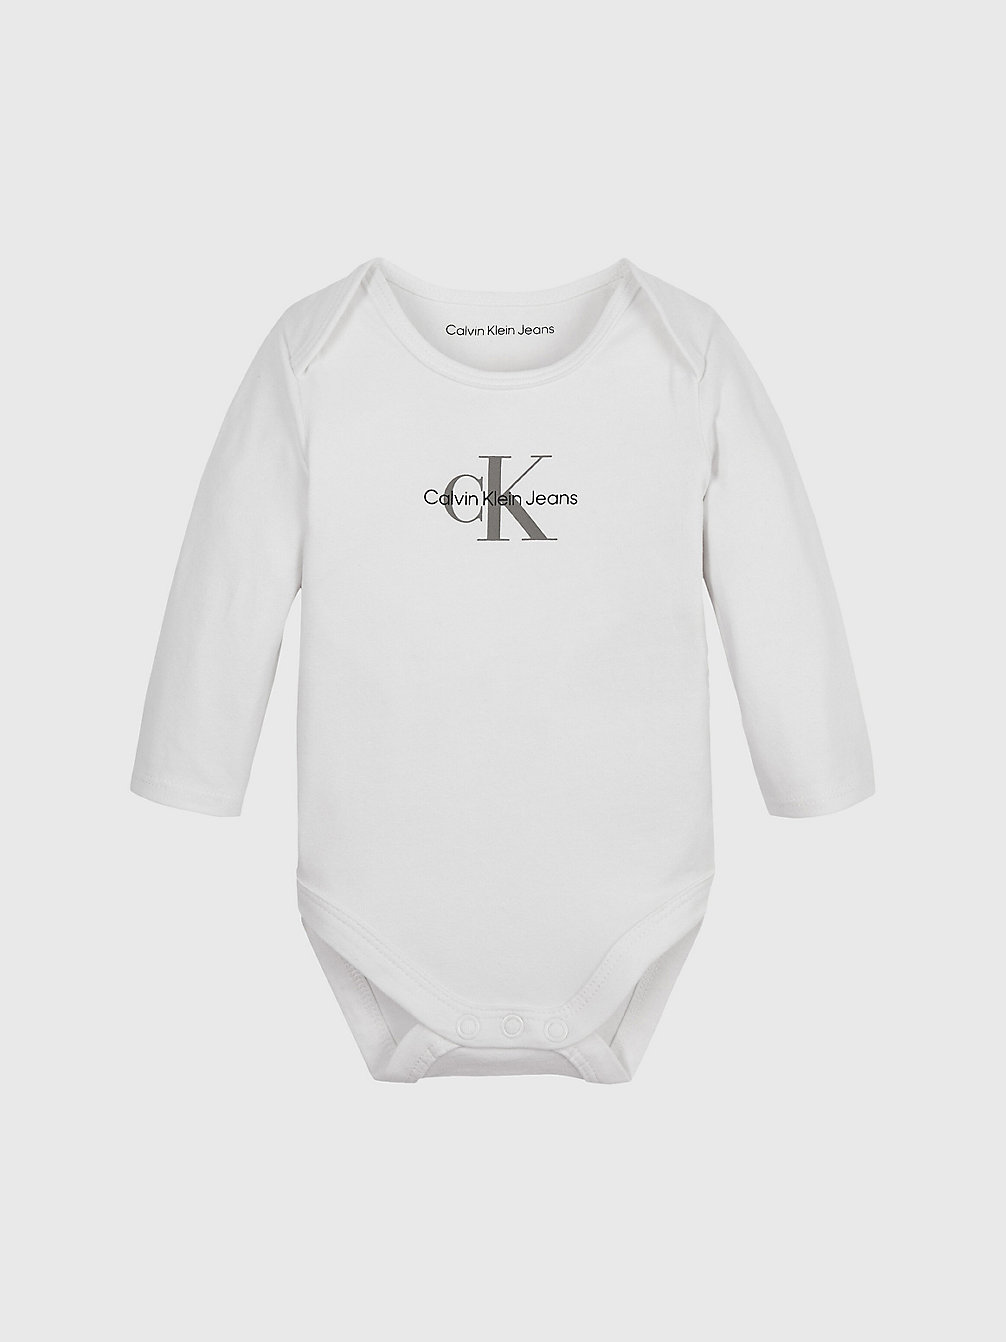 BRIGHT WHITE > Боди для новорожденных с логотипом > undefined newborn - Calvin Klein